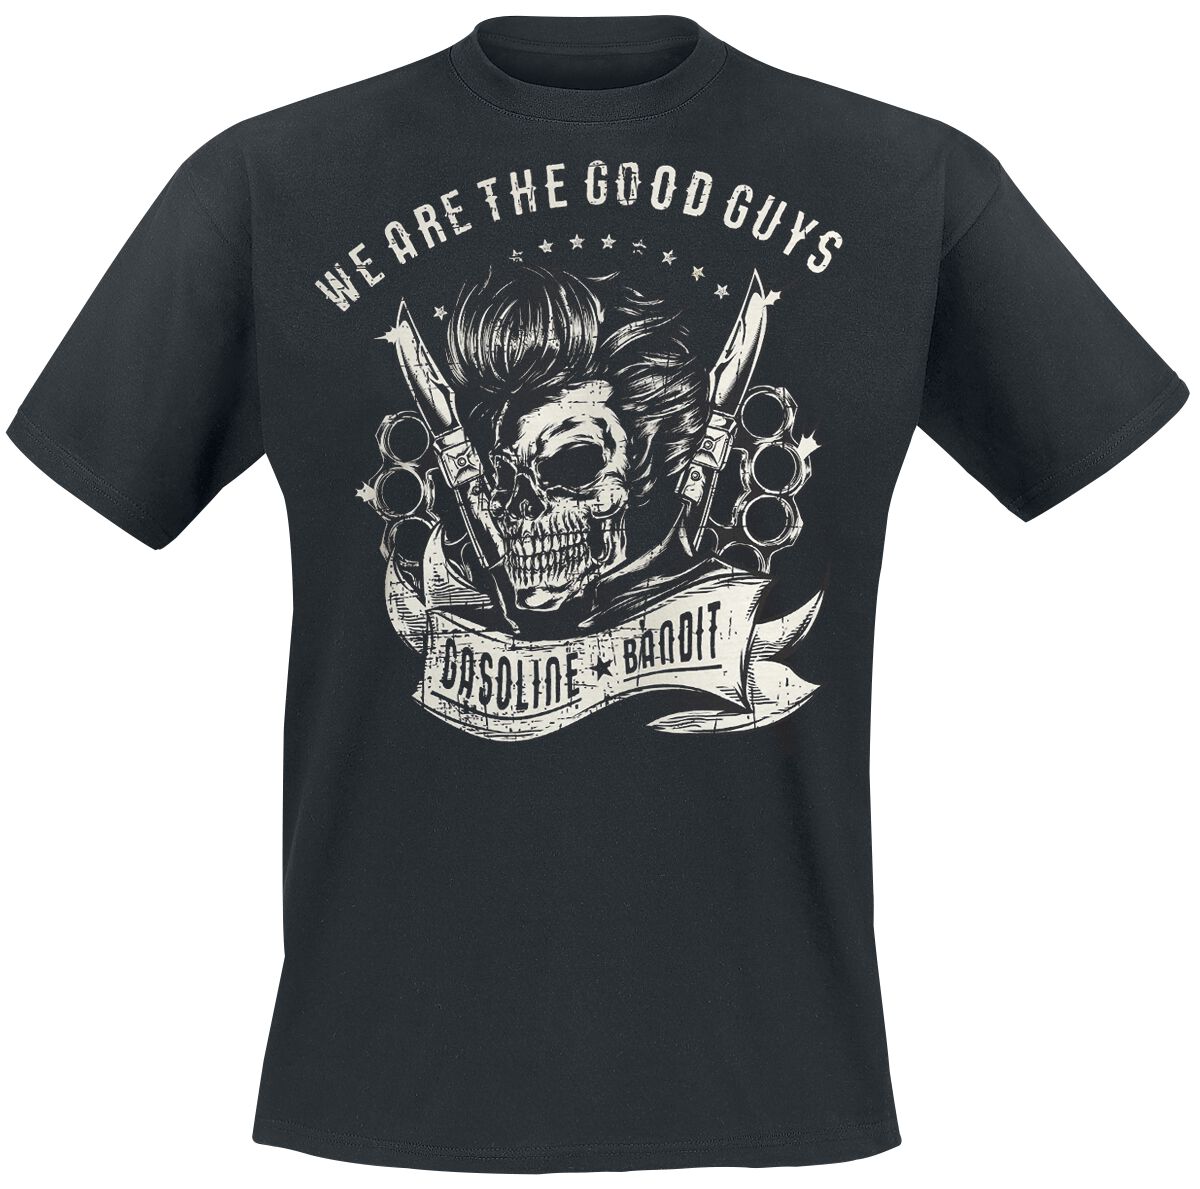 Gasoline Bandit - Rockabilly T-Shirt - We Are The Good Guys - S bis XXL - für Männer - Größe L - schwarz